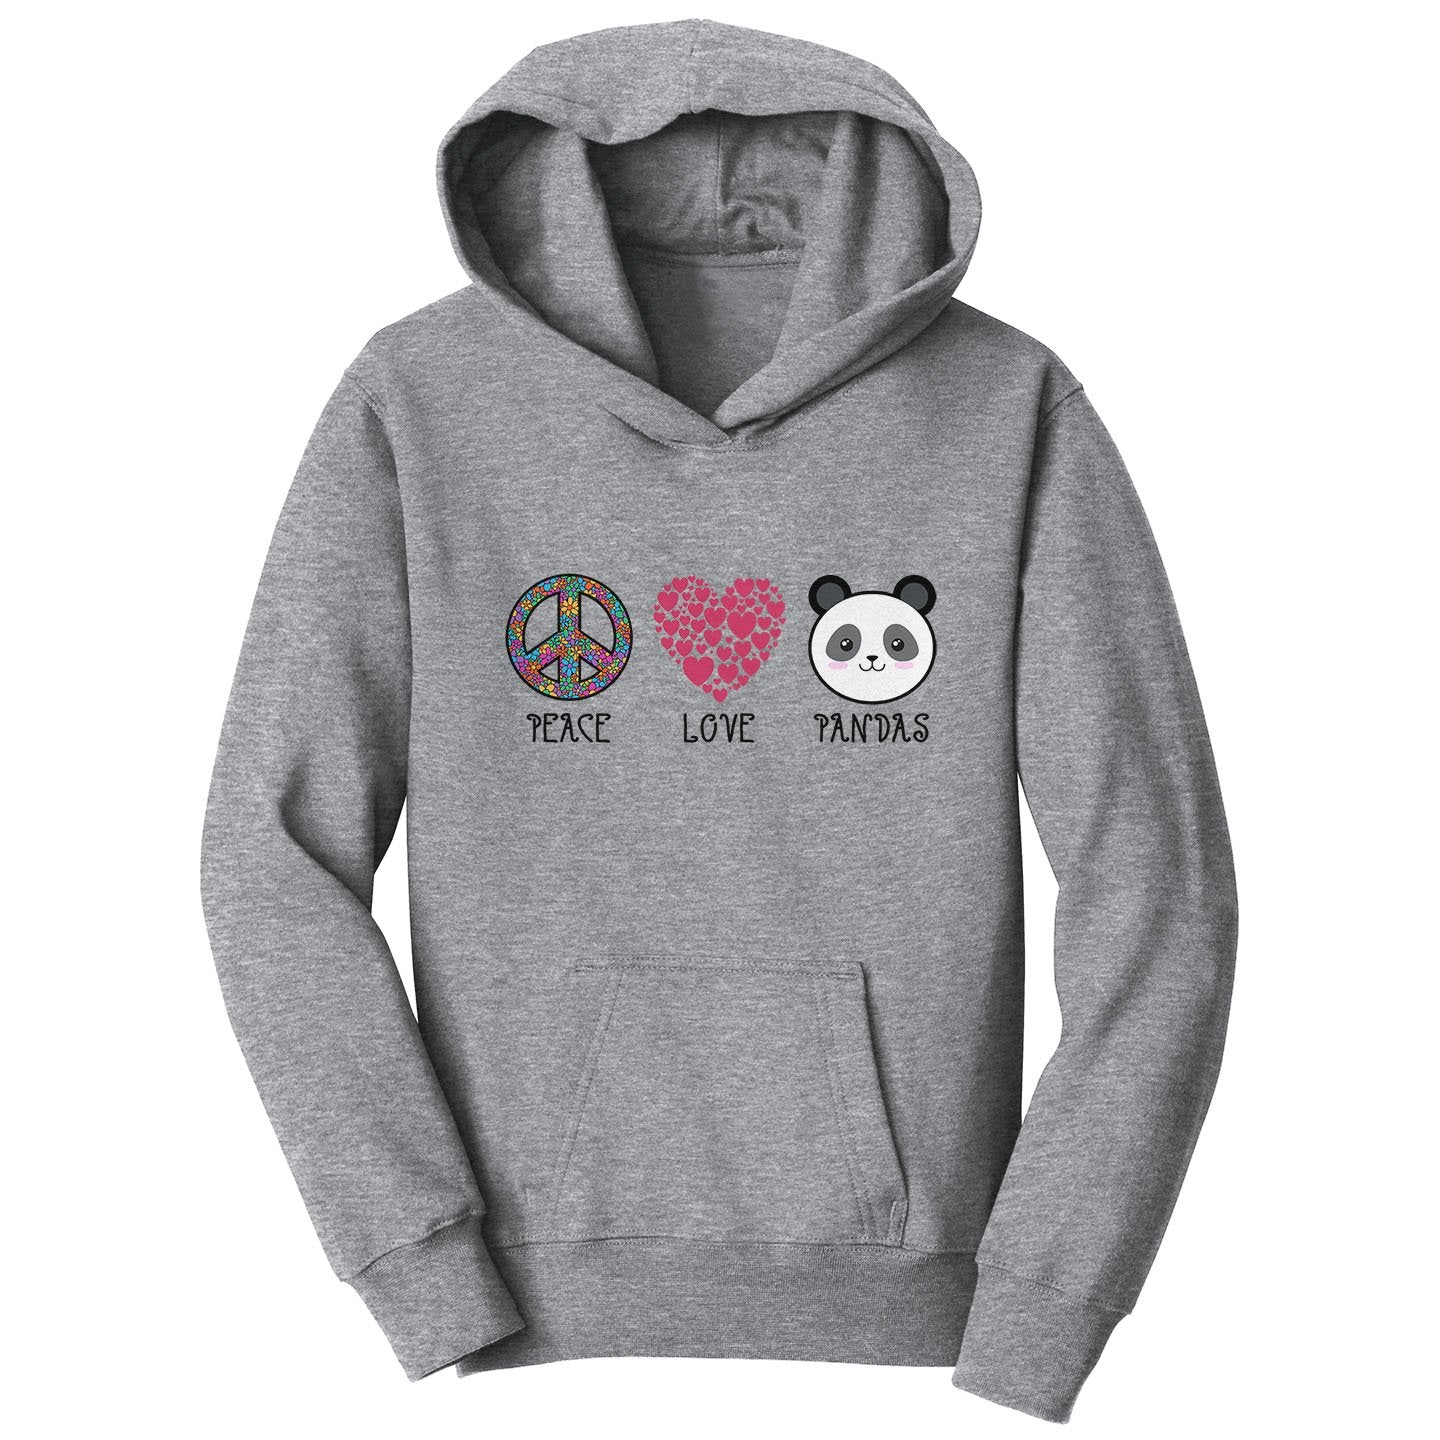 Peace Love Pandas - Kids' Unisex Hoodie Sweatshirt